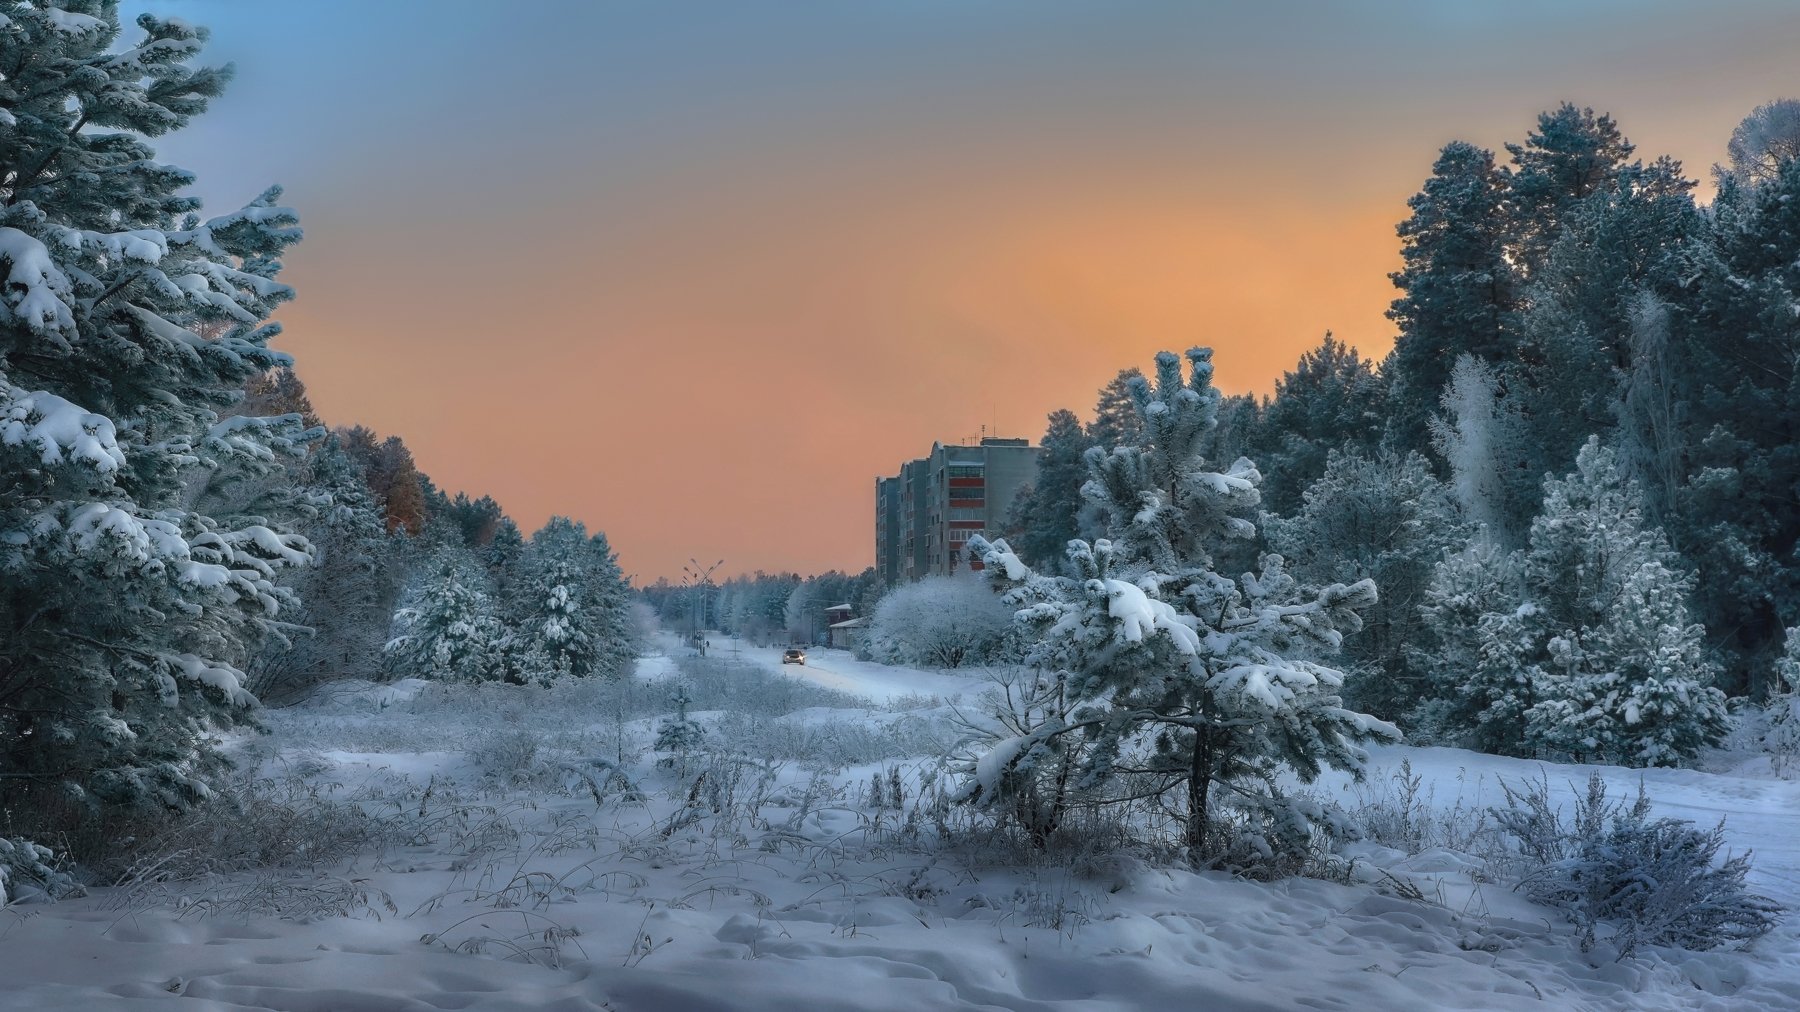 Саянск, окраина города ,зима, деревья в снегу, небо на закате солнца,, Сергей